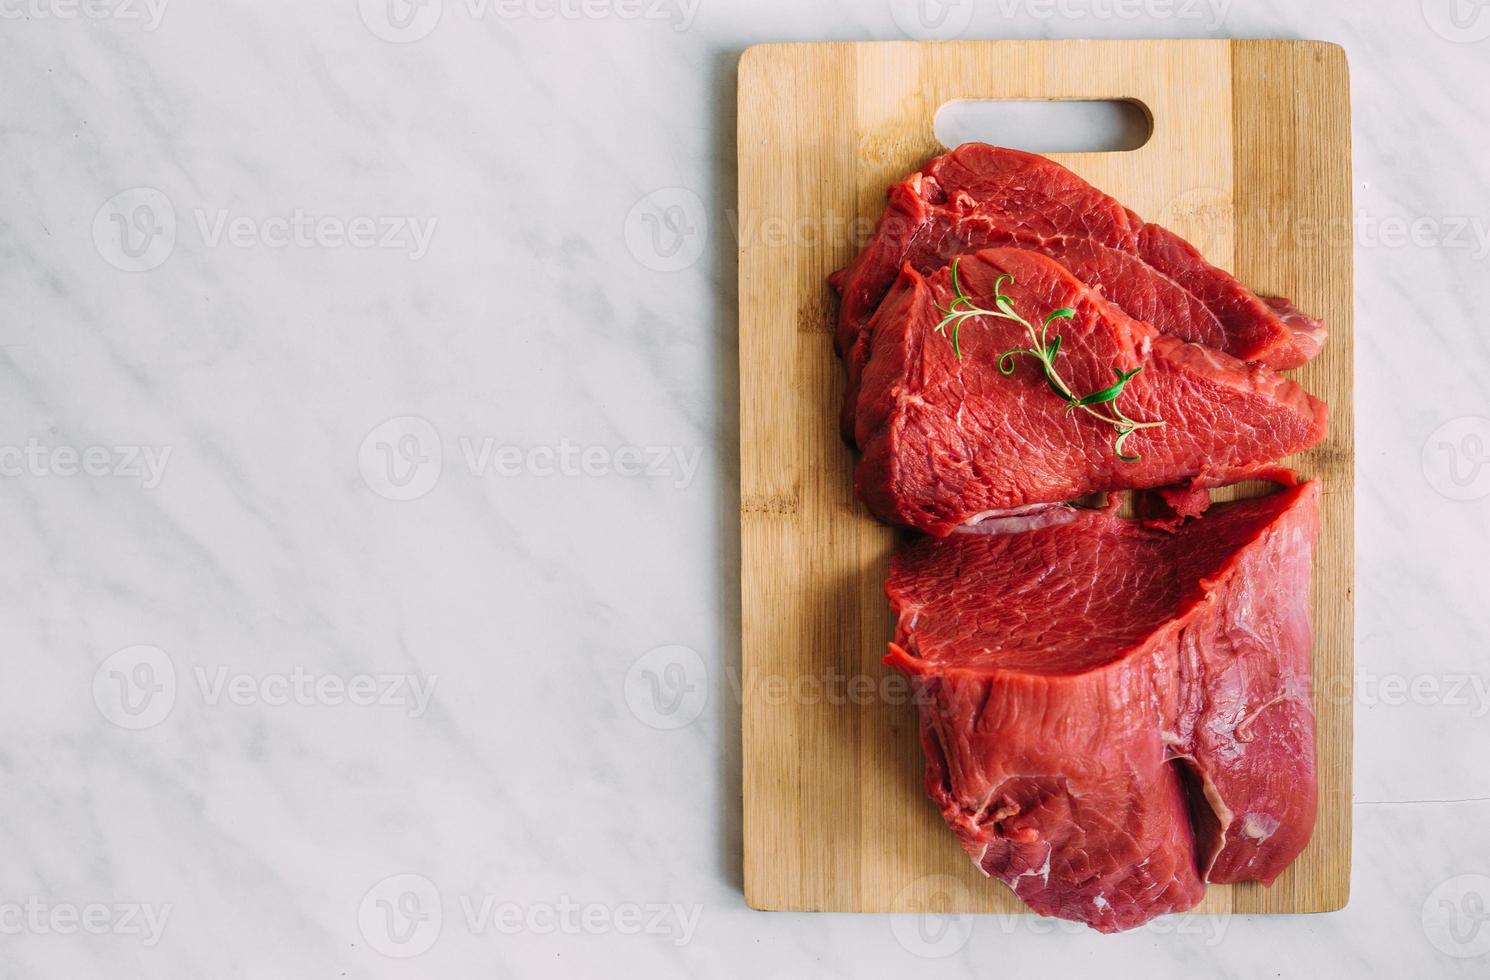 filete crudo de cerdo fresco sobre tabla de madera. carne de res roja en una tabla de cortar. foto